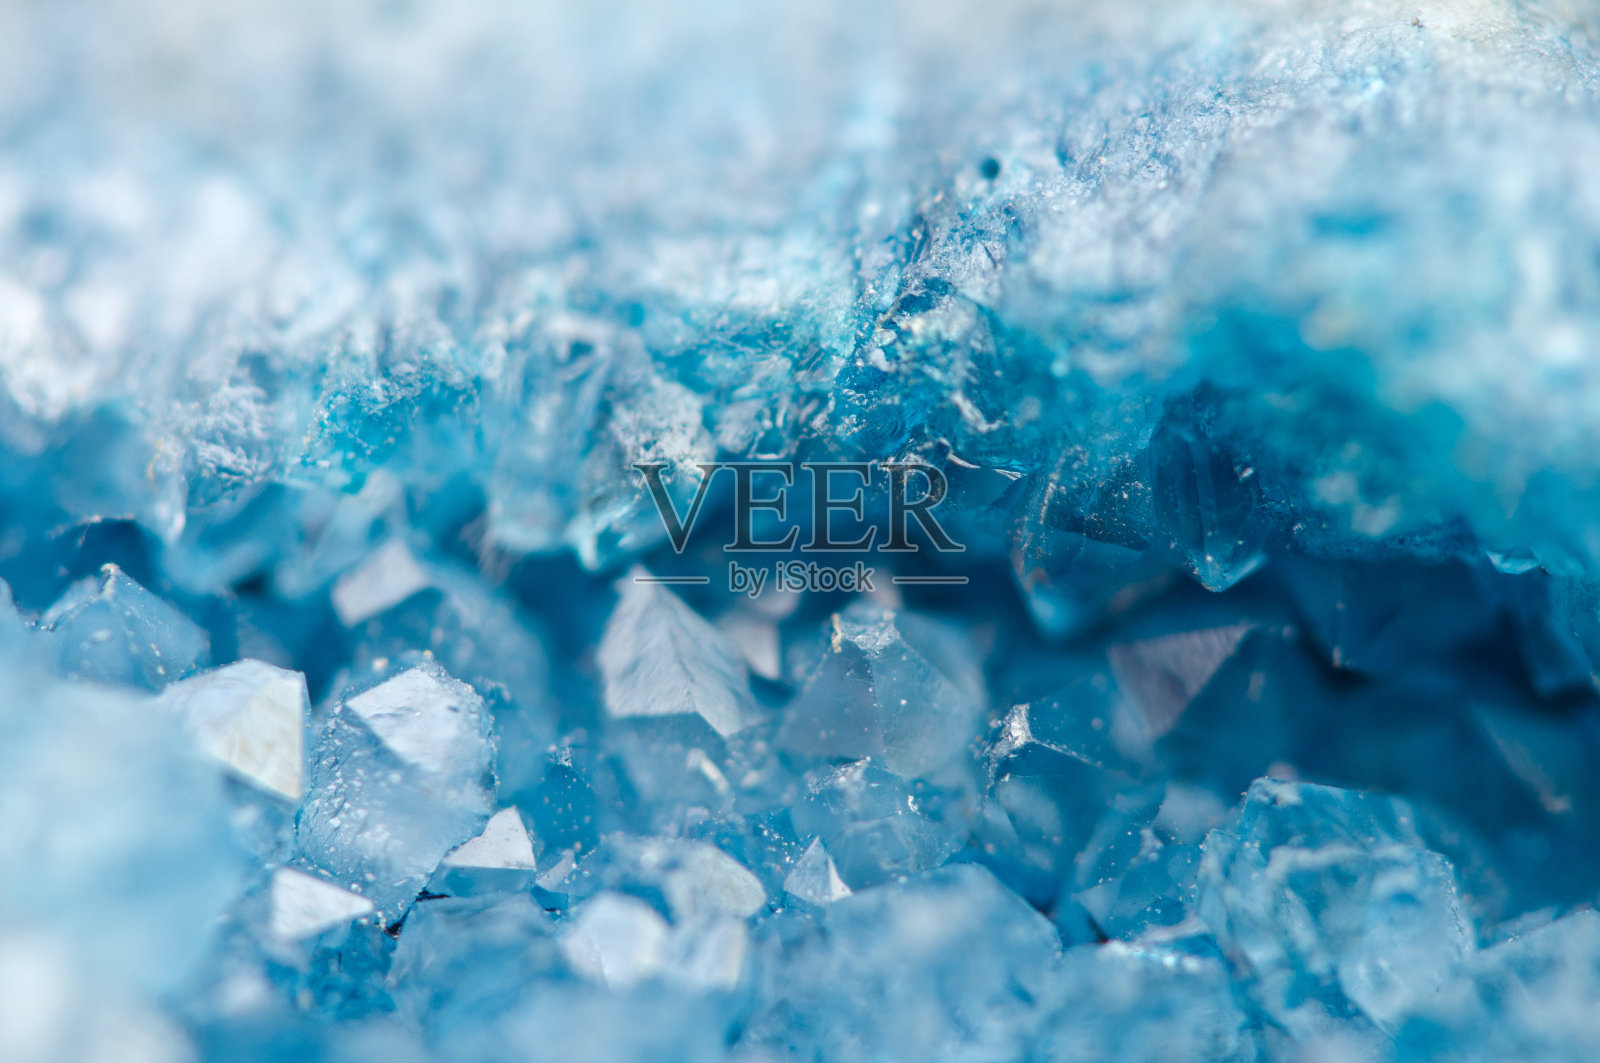 蓝水晶玛瑙SiO2。宏照片摄影图片